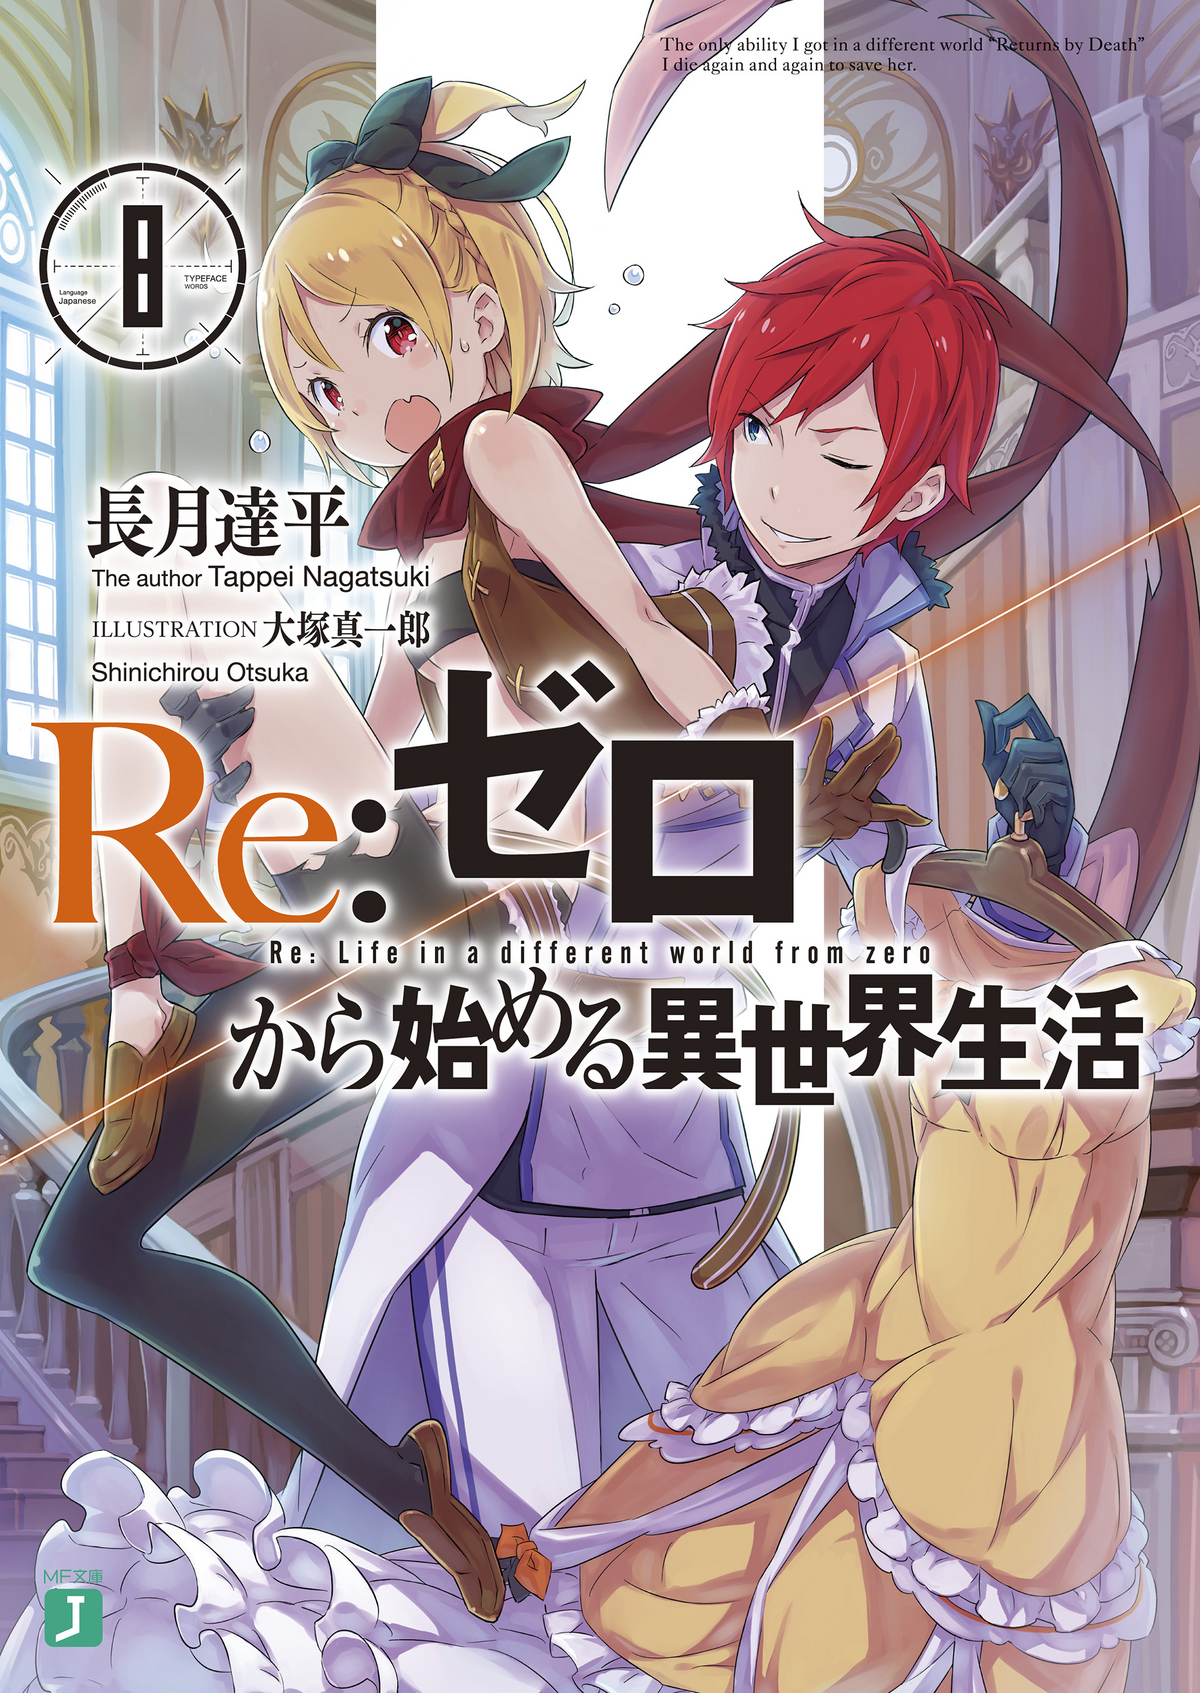 Re:Zero Light Novel Volume 24, Re:Zero Wiki